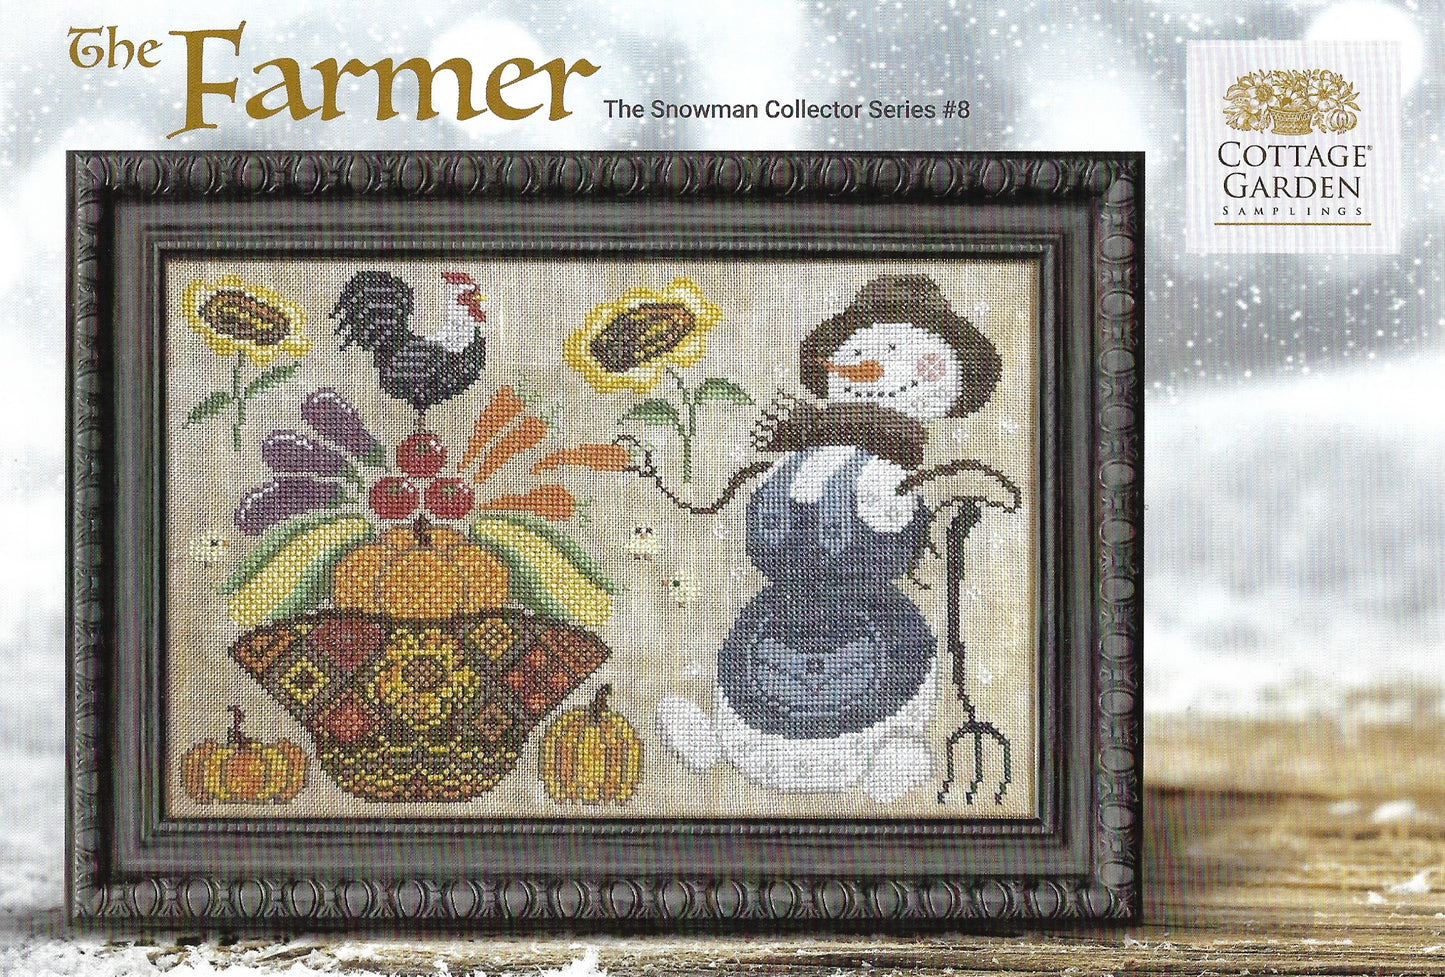 Cottage Garden Samplings - Snowman Collector - The Farmer